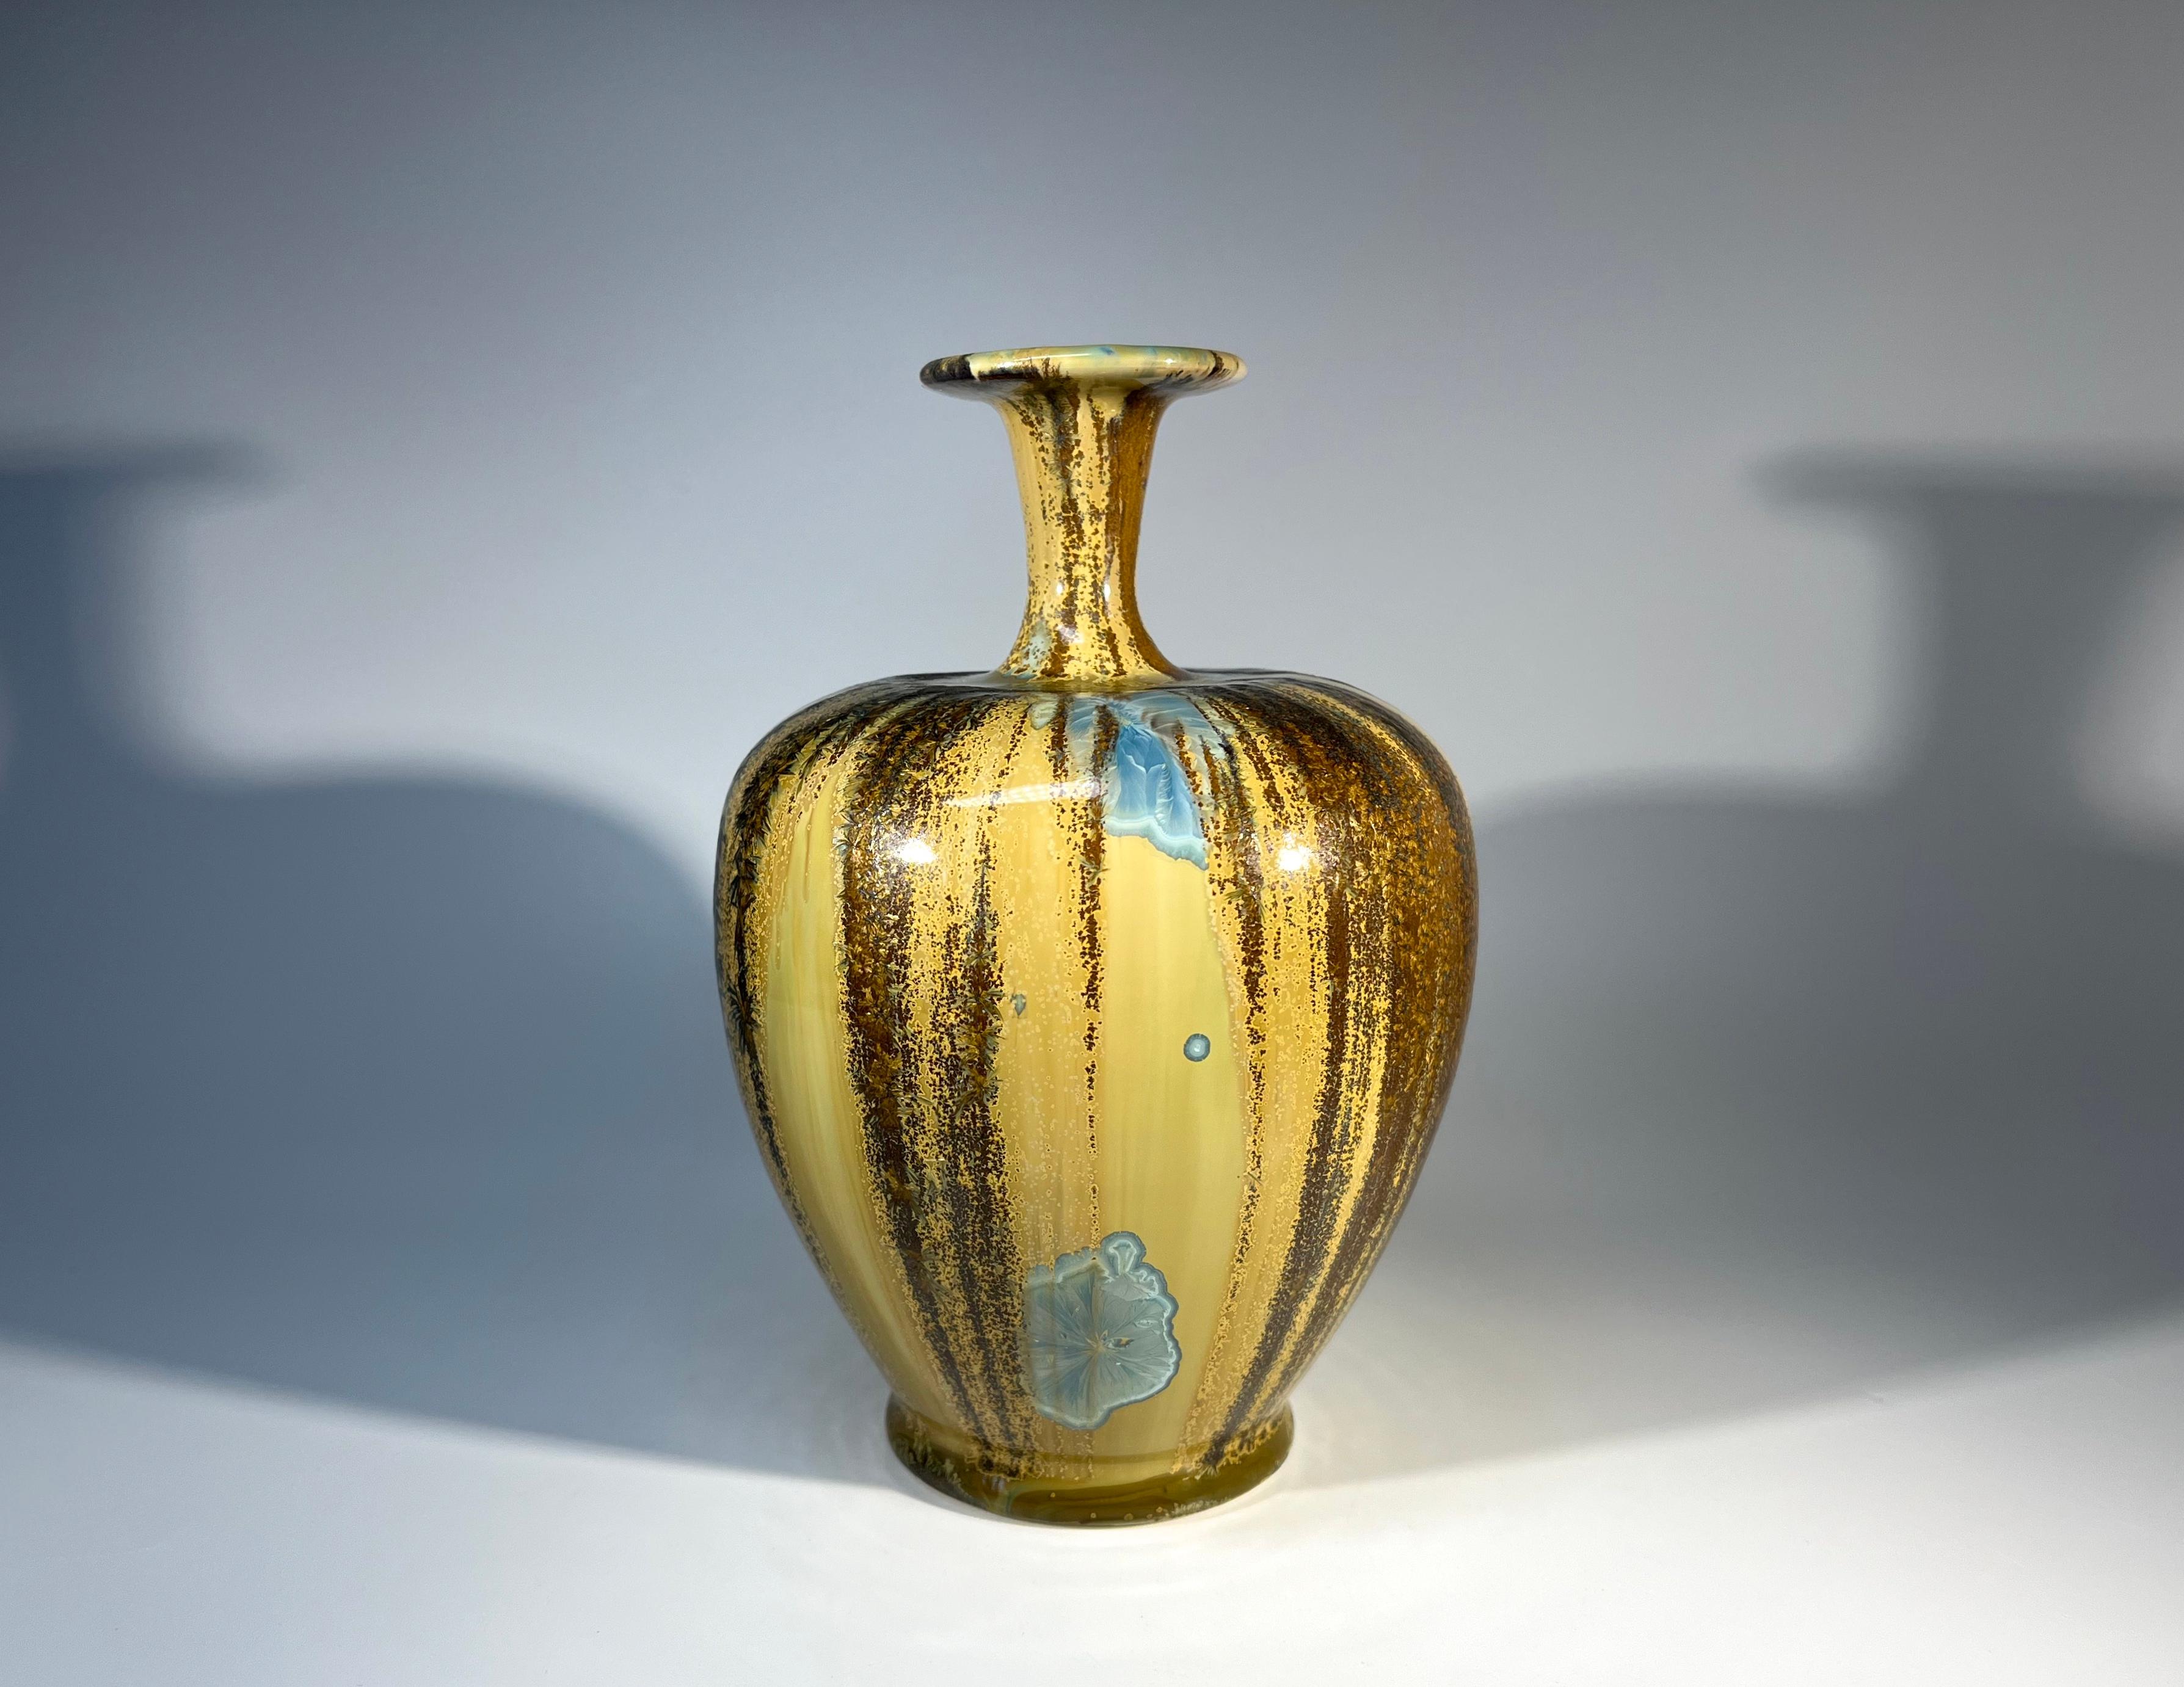 Wunderschöne Vase mit kristalliner Glasur von dem englischen Kunsthandwerker Maurice Young von der Sussex Guild 
Warme Töne von Karamell und Honigbraun, gekühlt durch eisige blassblaue Kristalle
Ein hervorragendes Beispiel für die Kreativität